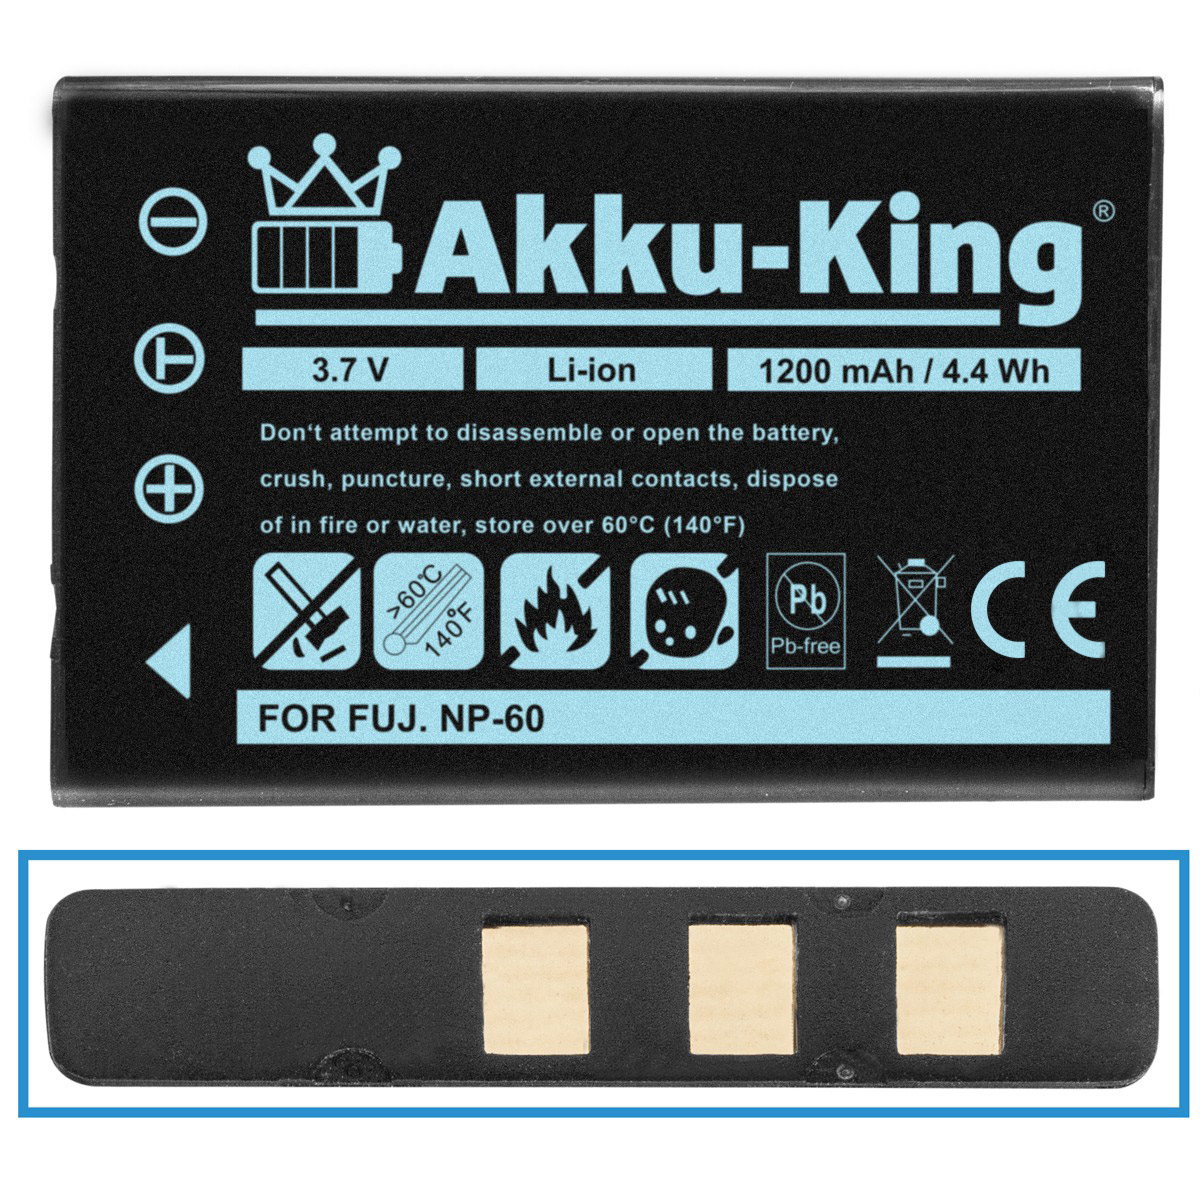 AKKU-KING 1200mAh Ricoh Akku DB-40 Li-Ion mit Kamera-Akku, Volt, kompatibel 3.7